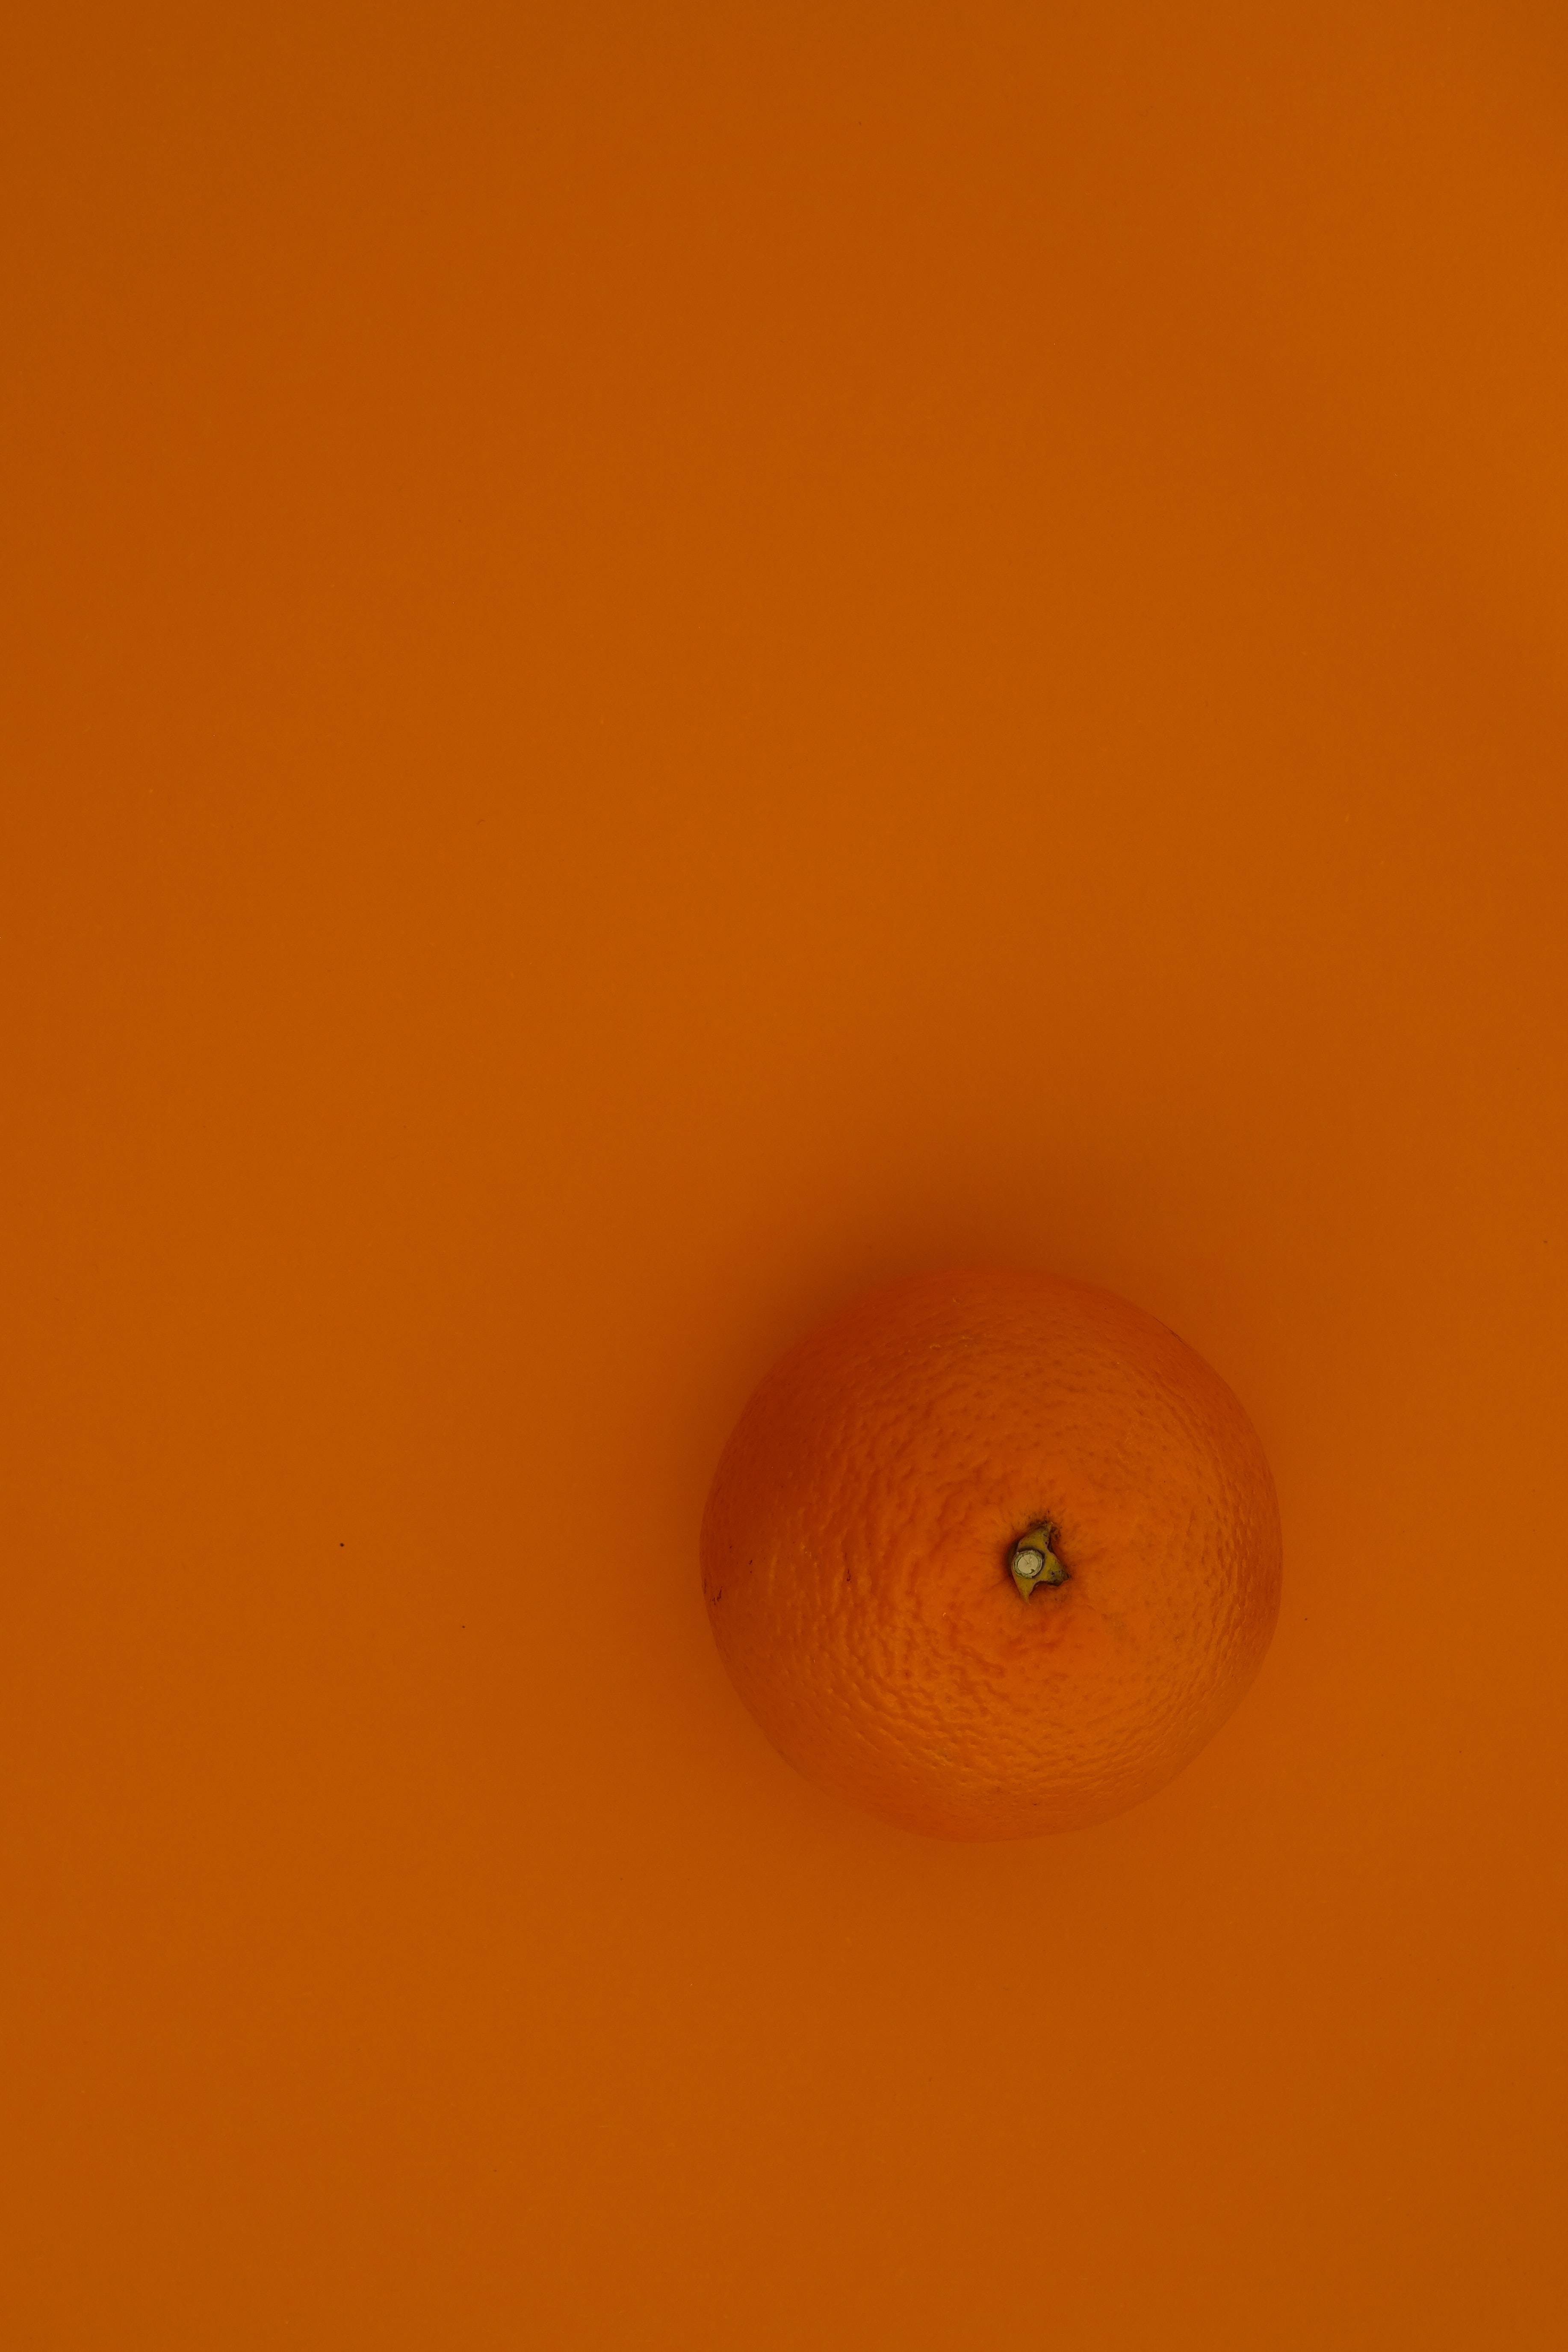 Скачать обои бесплатно Еда, Оранжевый, Фрукт, Фон, Апельсин картинка на рабочий стол ПК